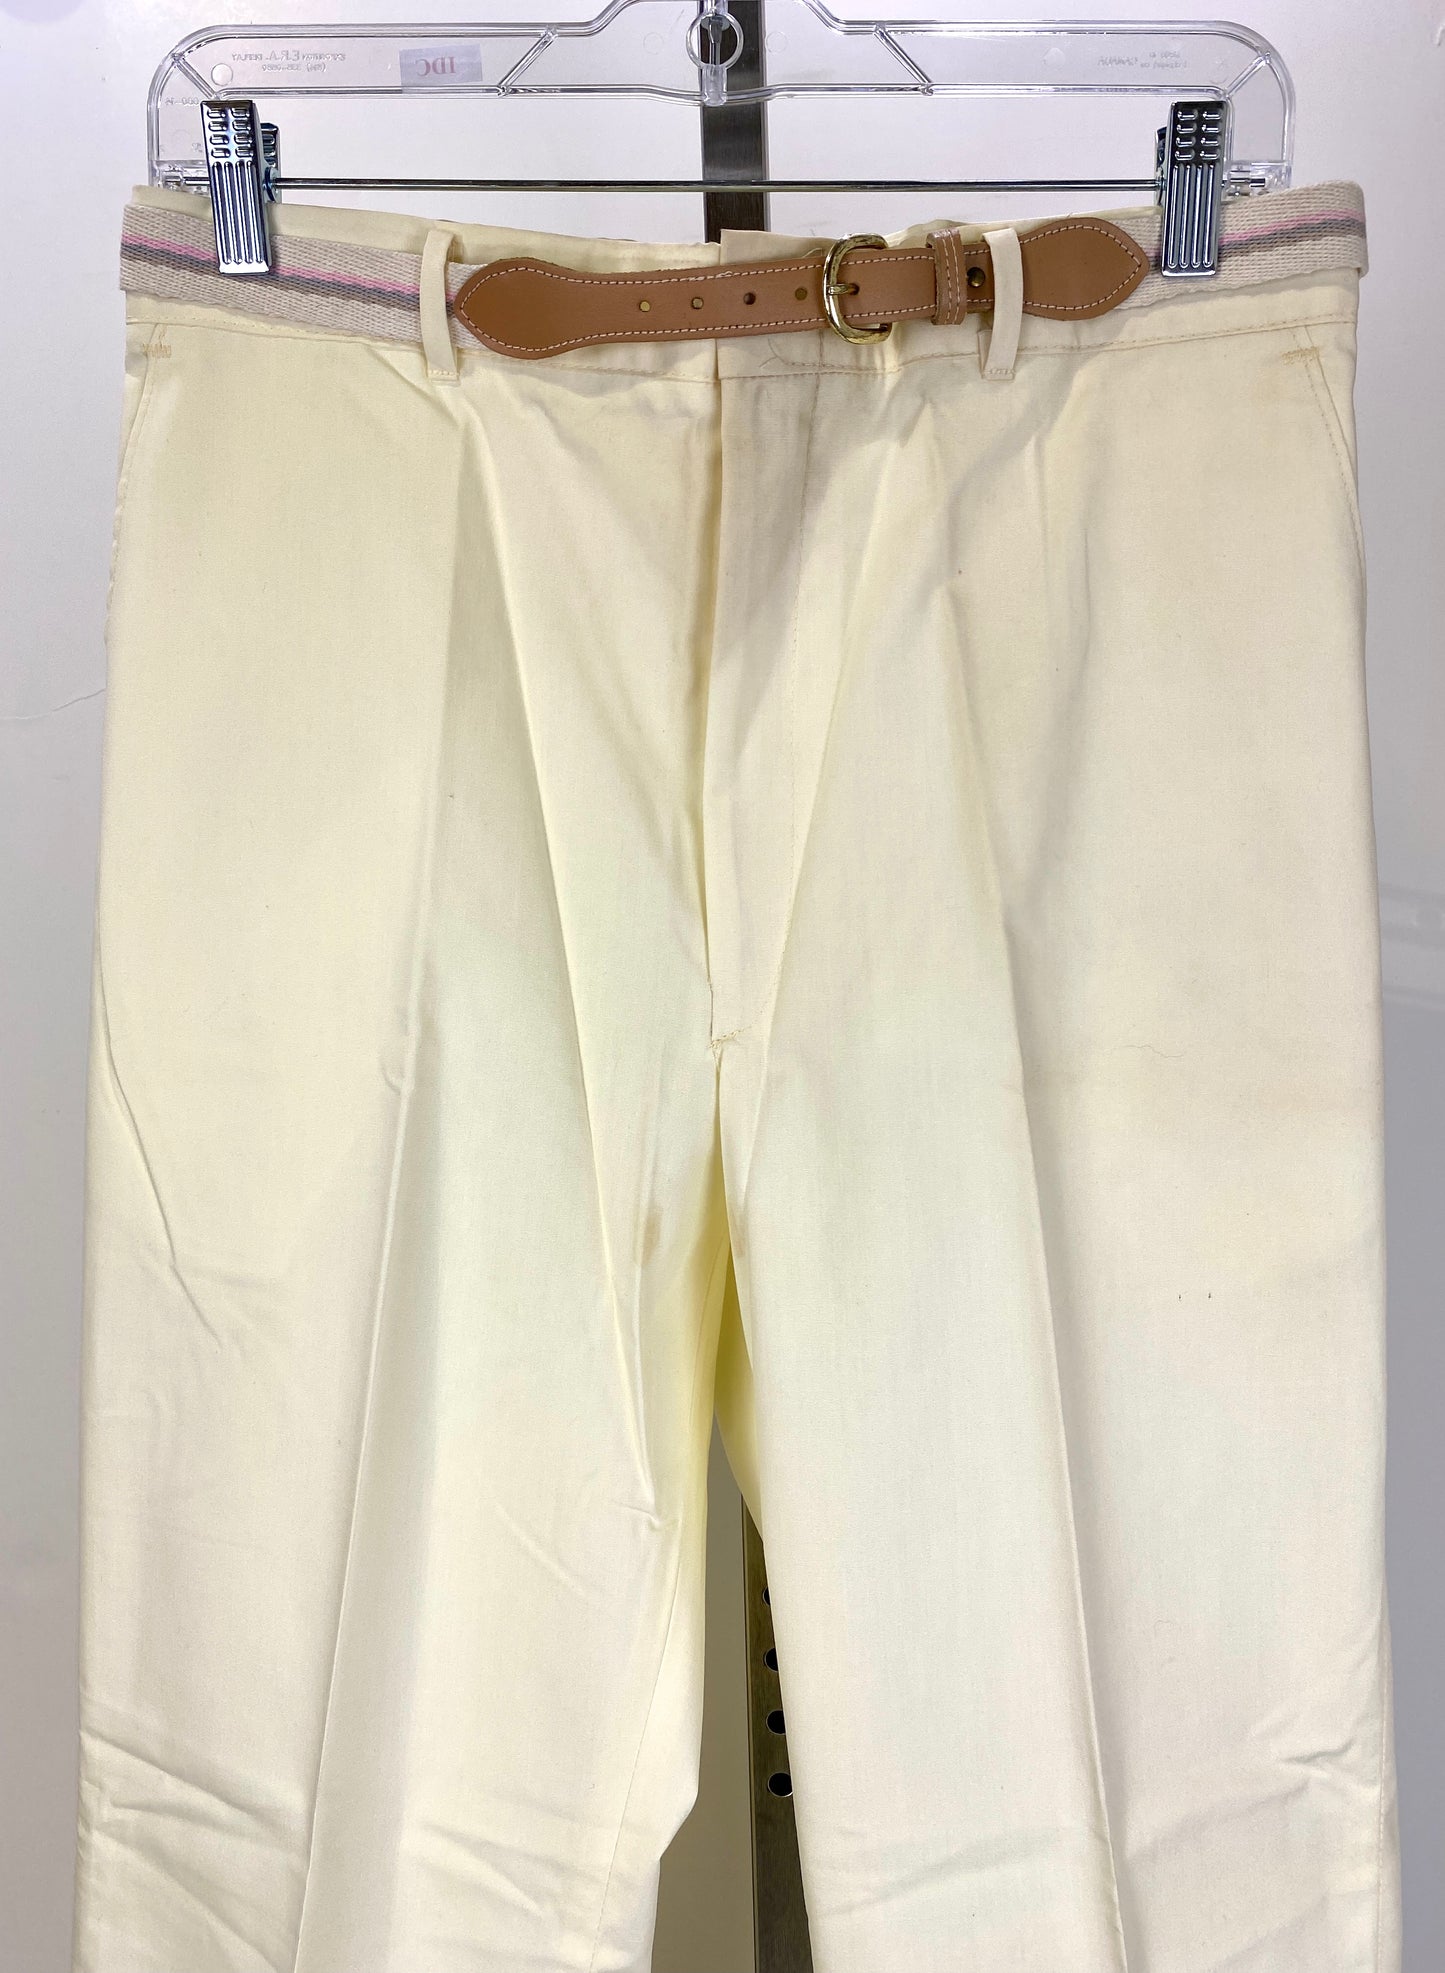 Vintage 1970s Deadstock Dee Cee Slacks, Men's Yellow Belted Pants, NOS